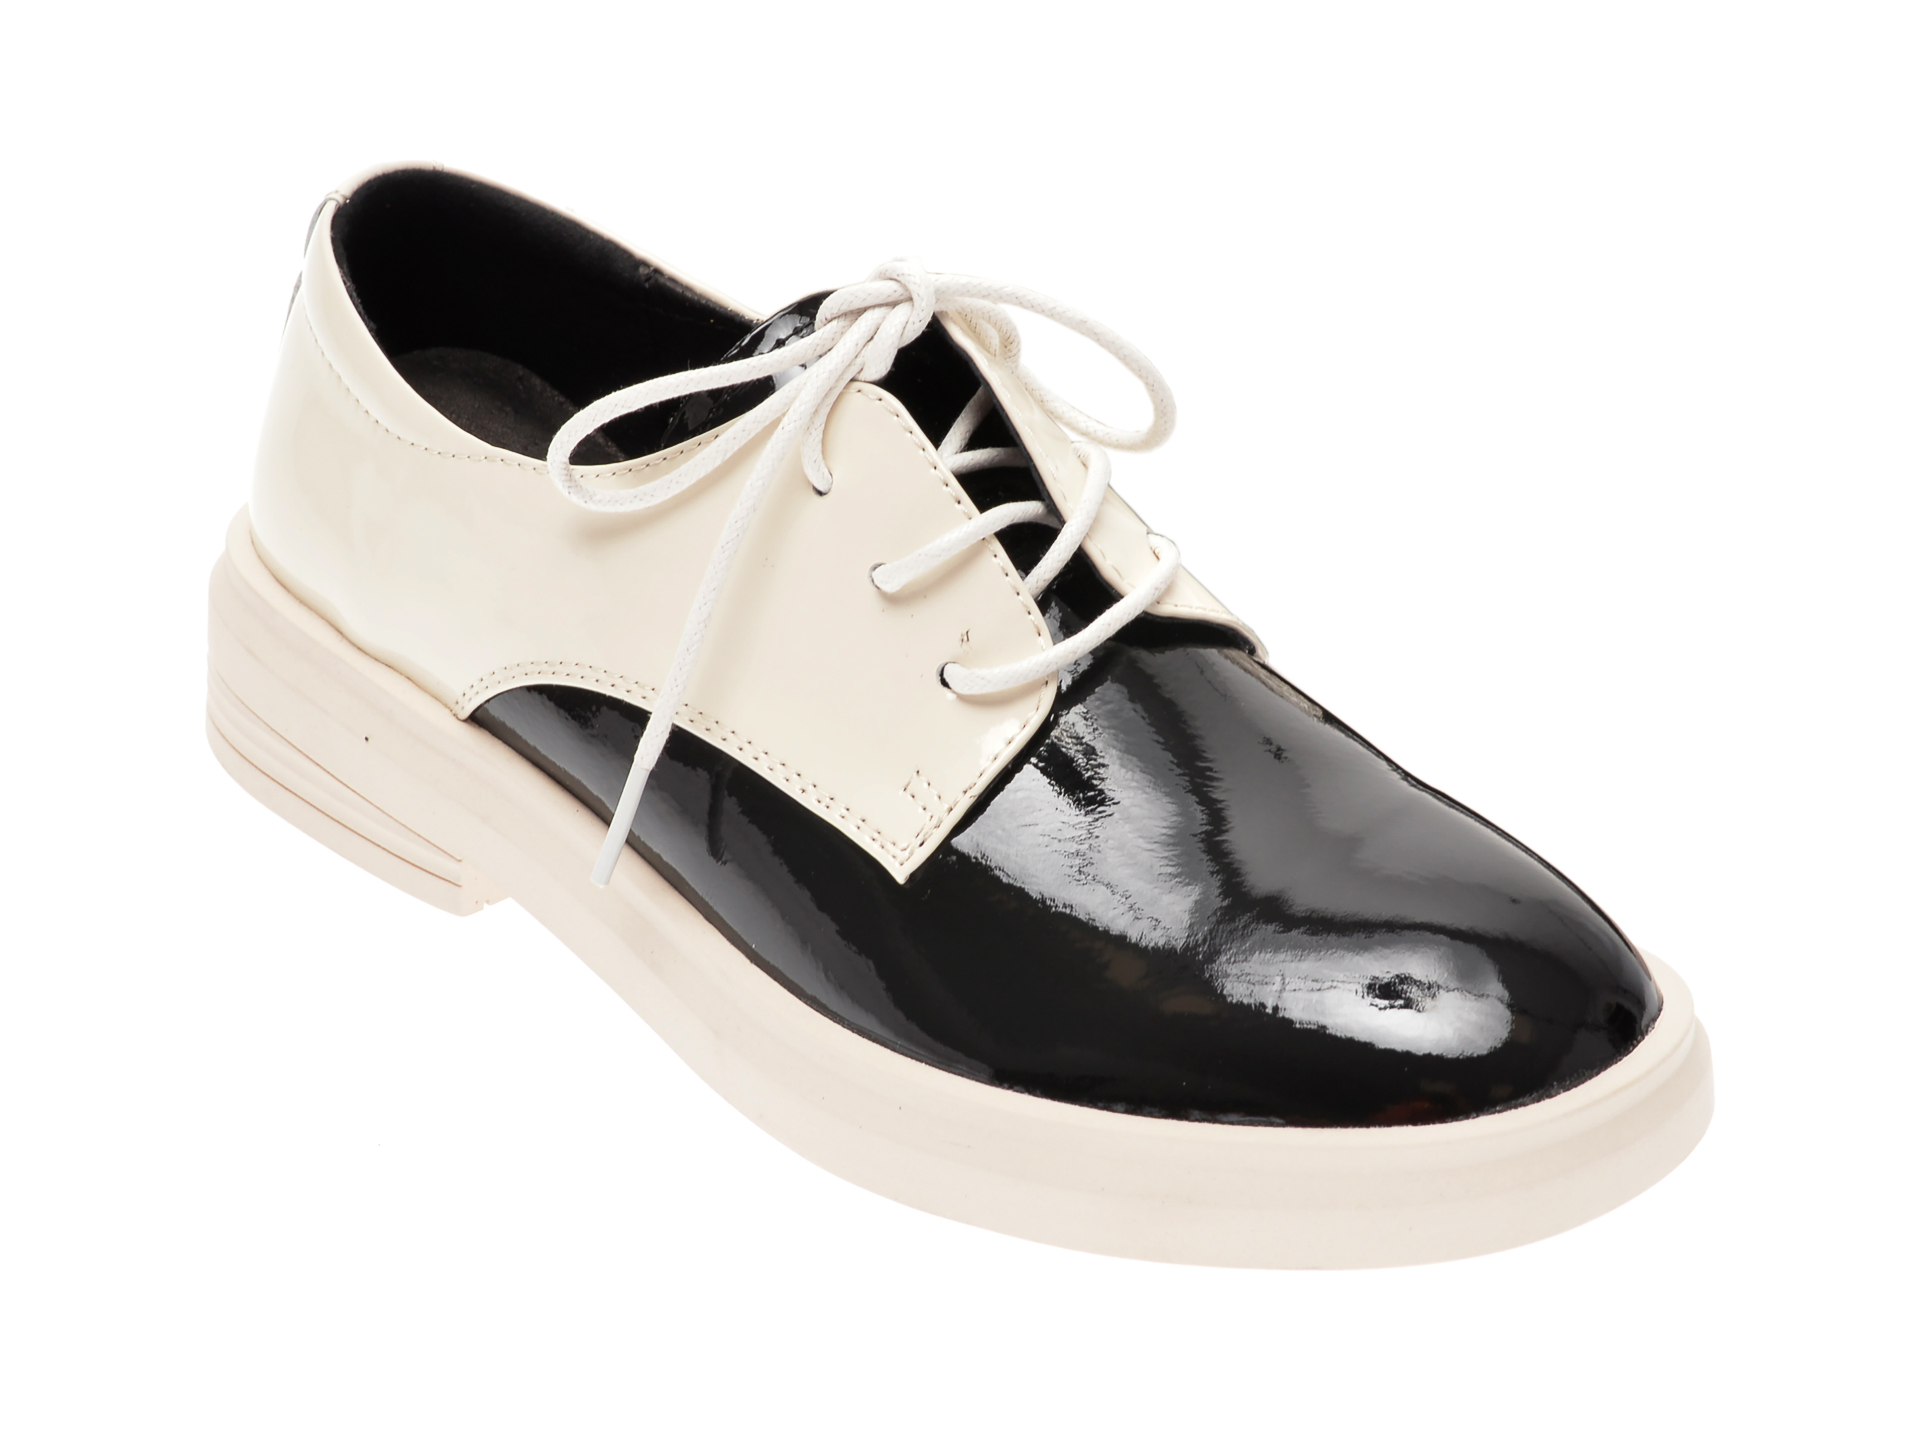 Pantofi PASS COLLECTION albi, 19118, din piele naturala lacuita